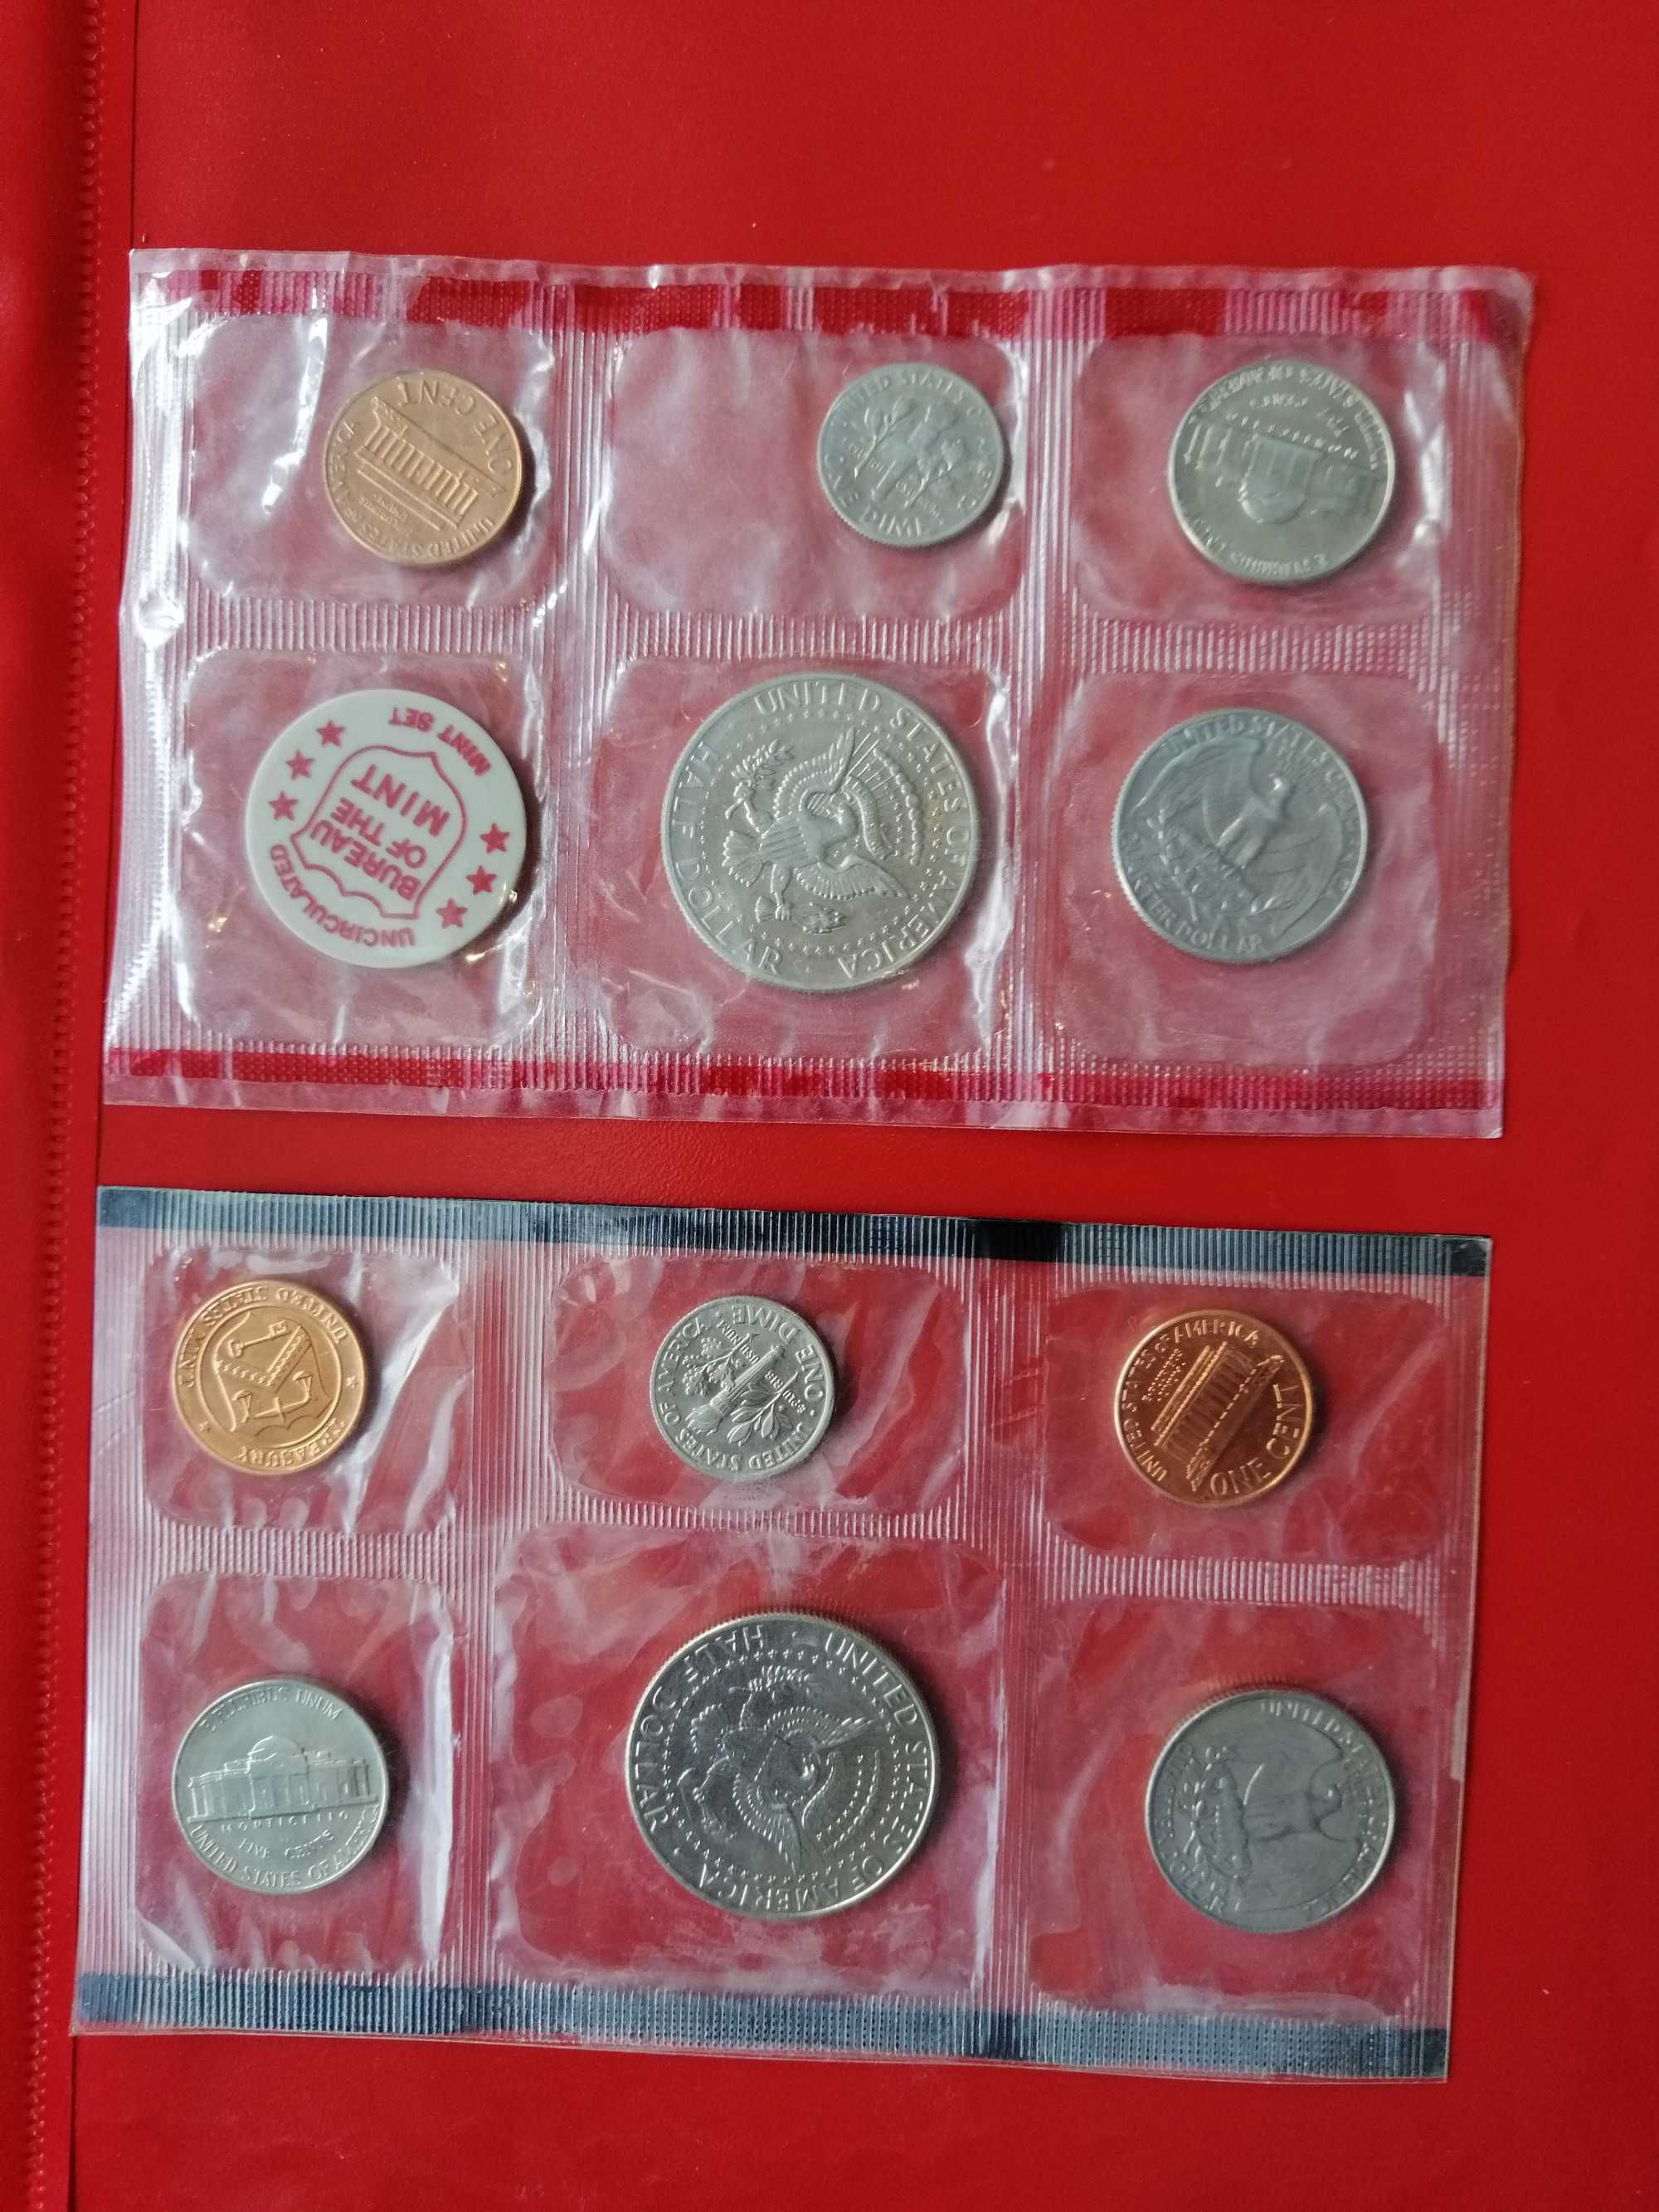 Vand 5 monede US 1989 si 1971 set P&D mints